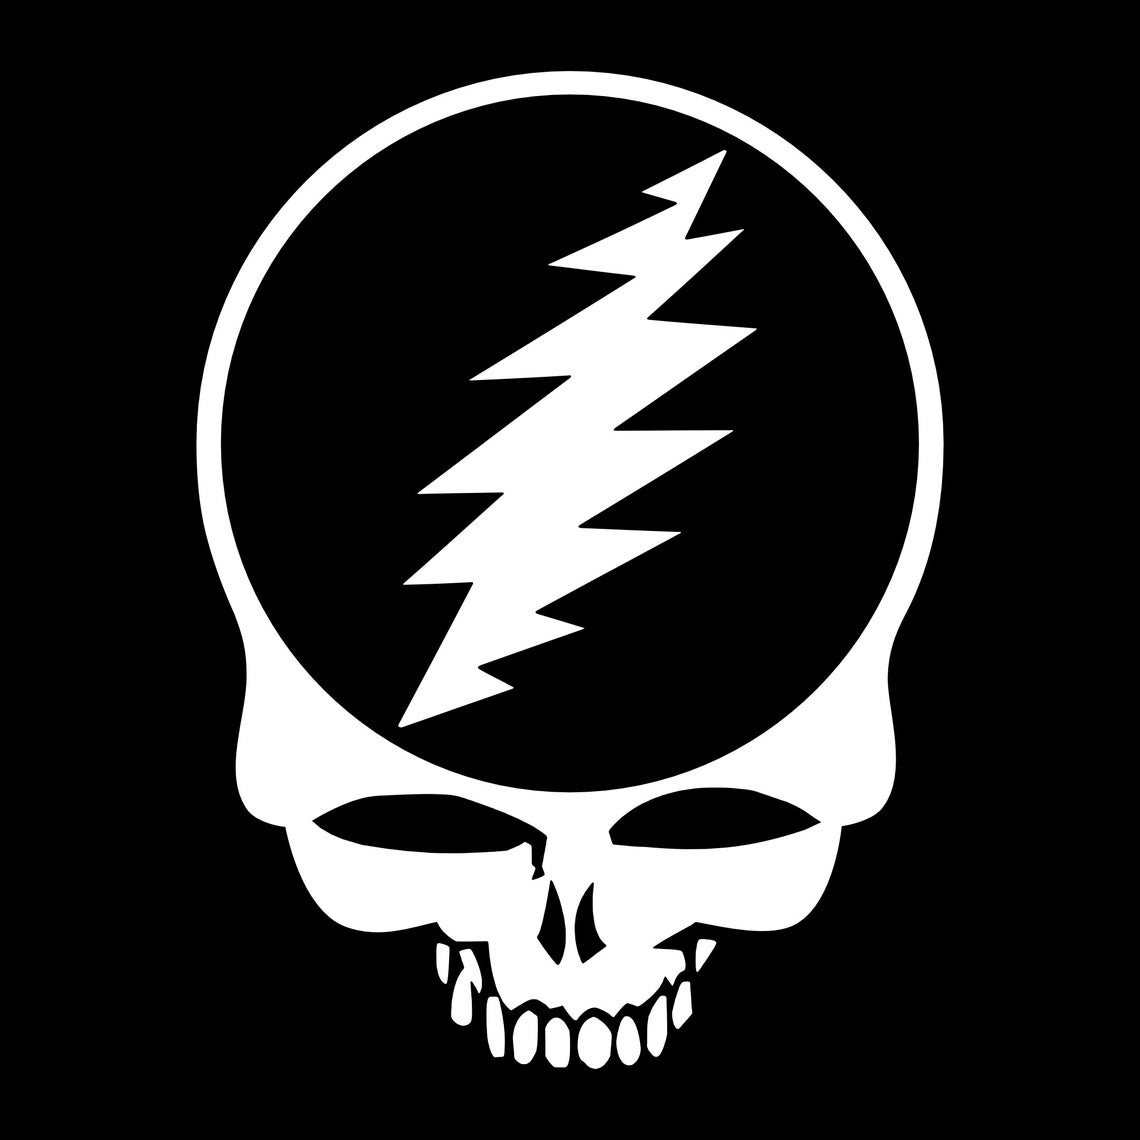 Grateful Dead Skull With Lightning Bolt Sticker | Etsy